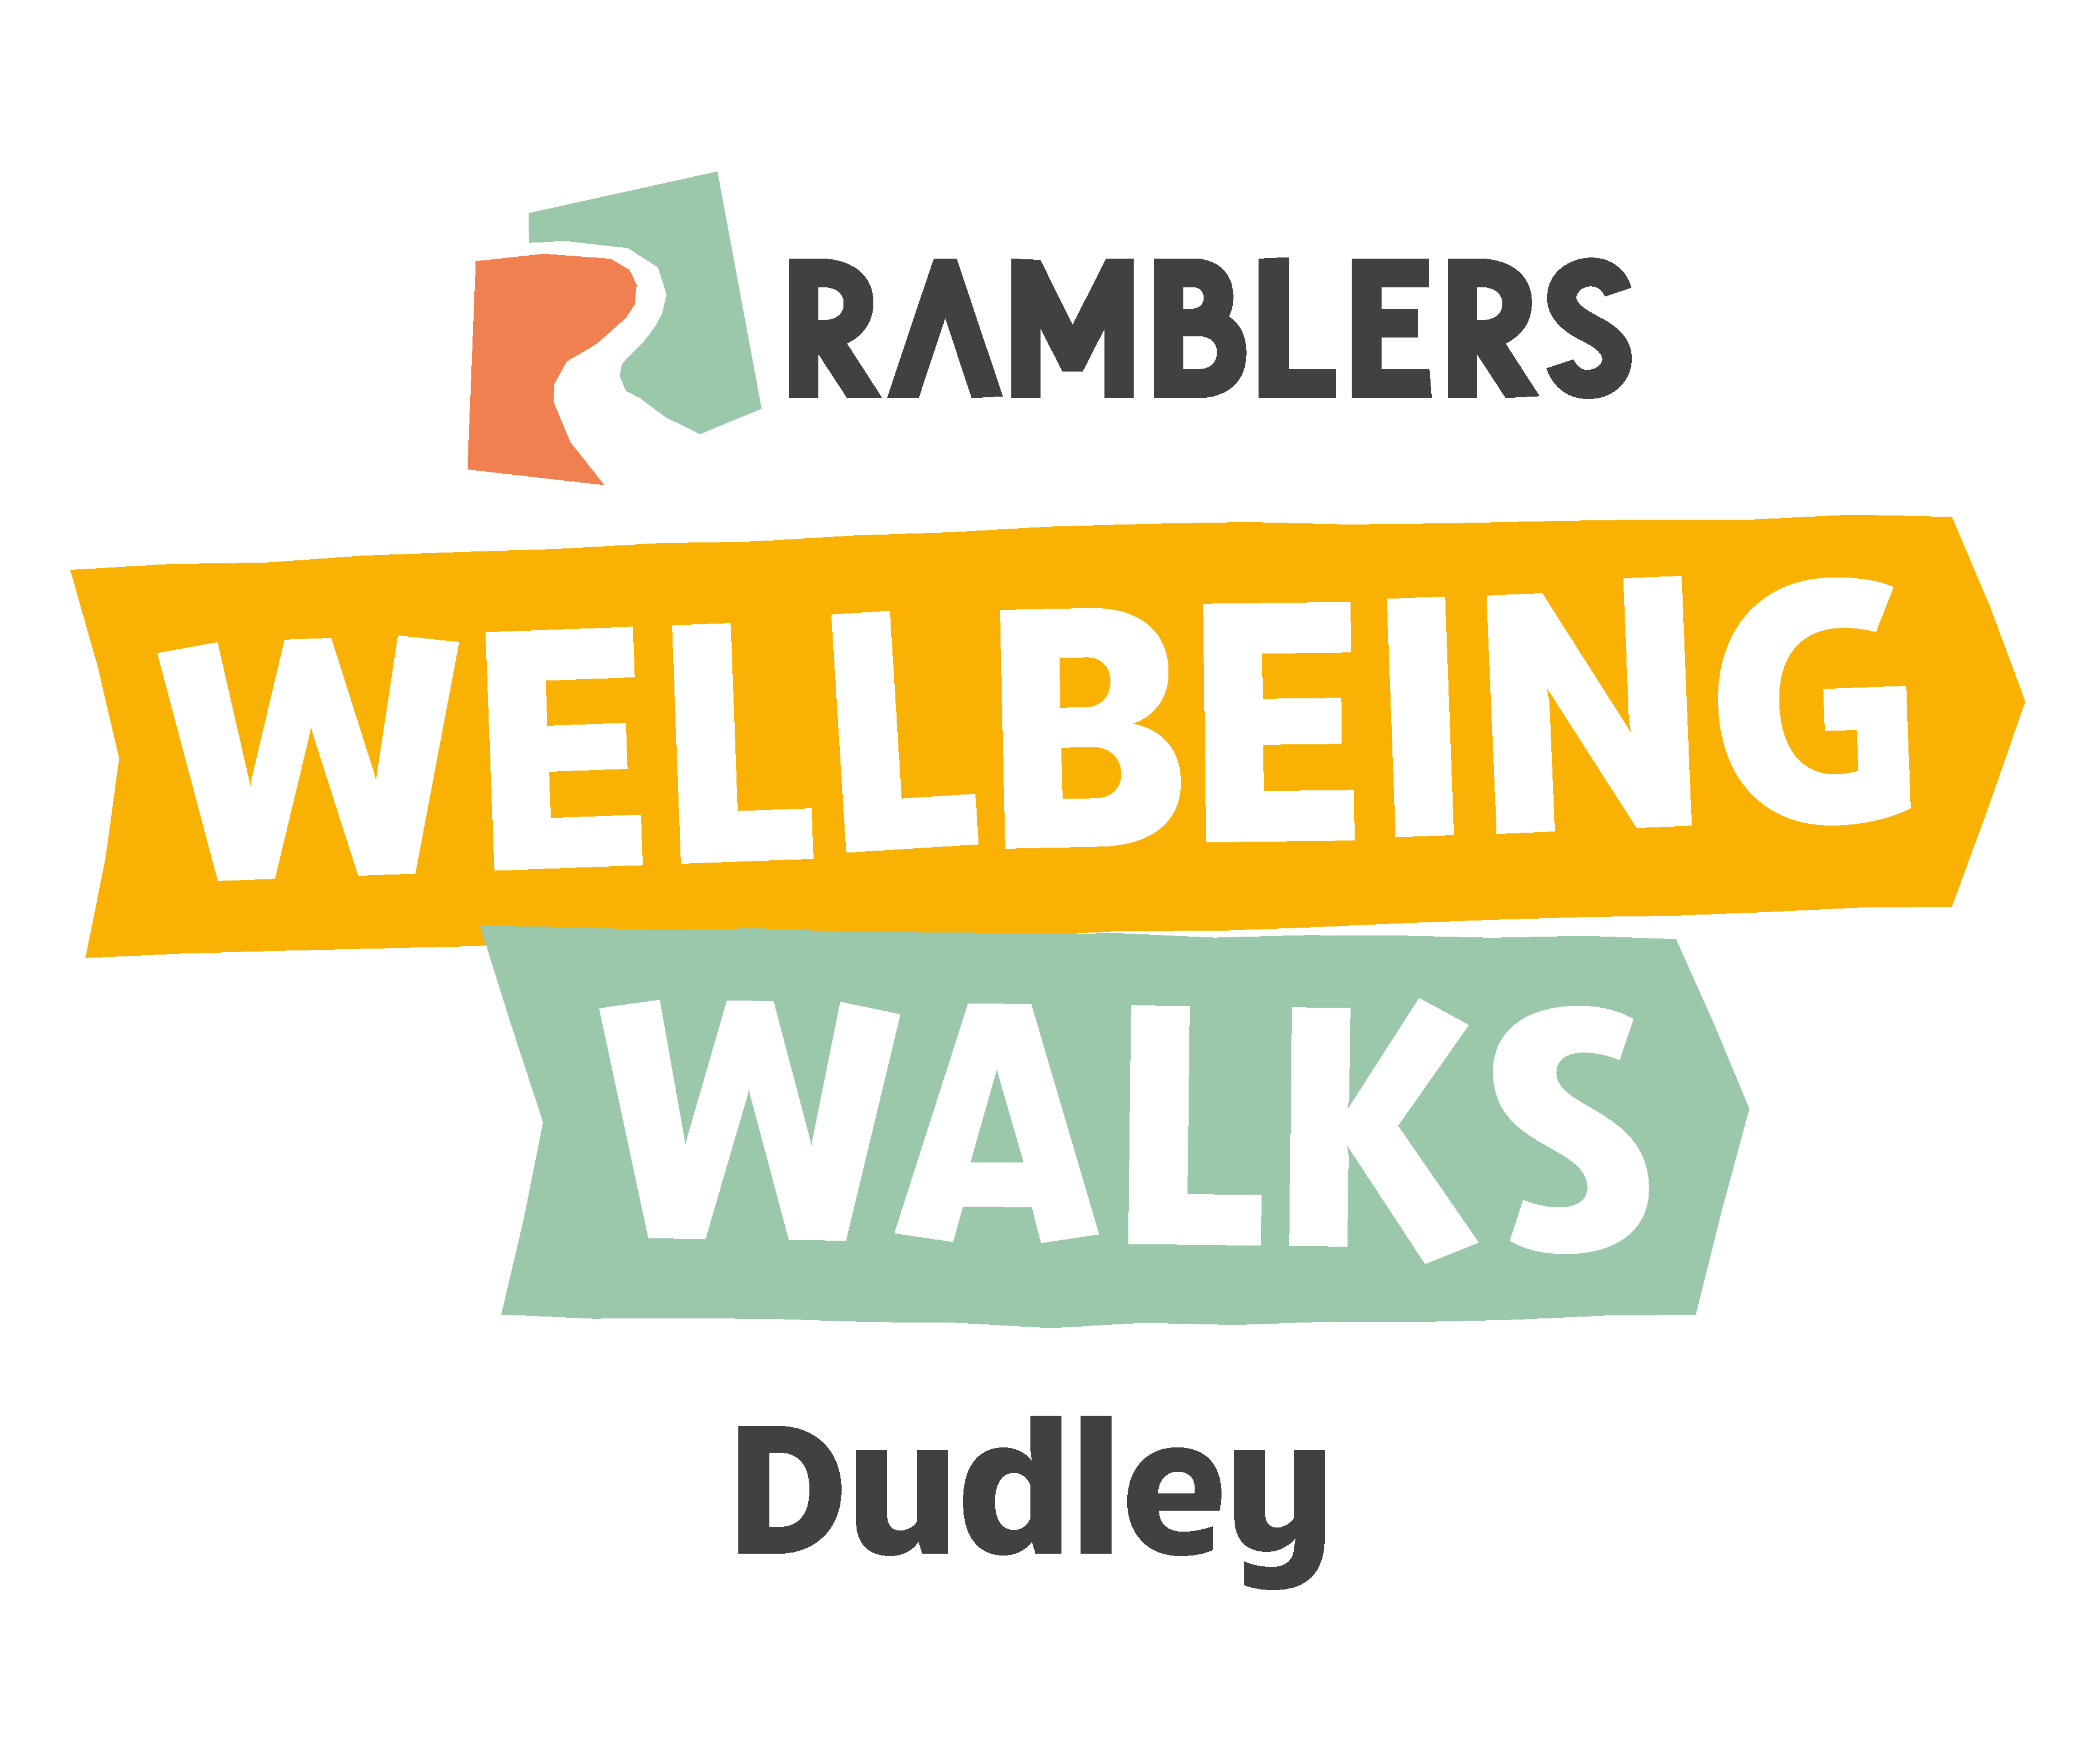 Ramblers Wellbeing Walks Dudley